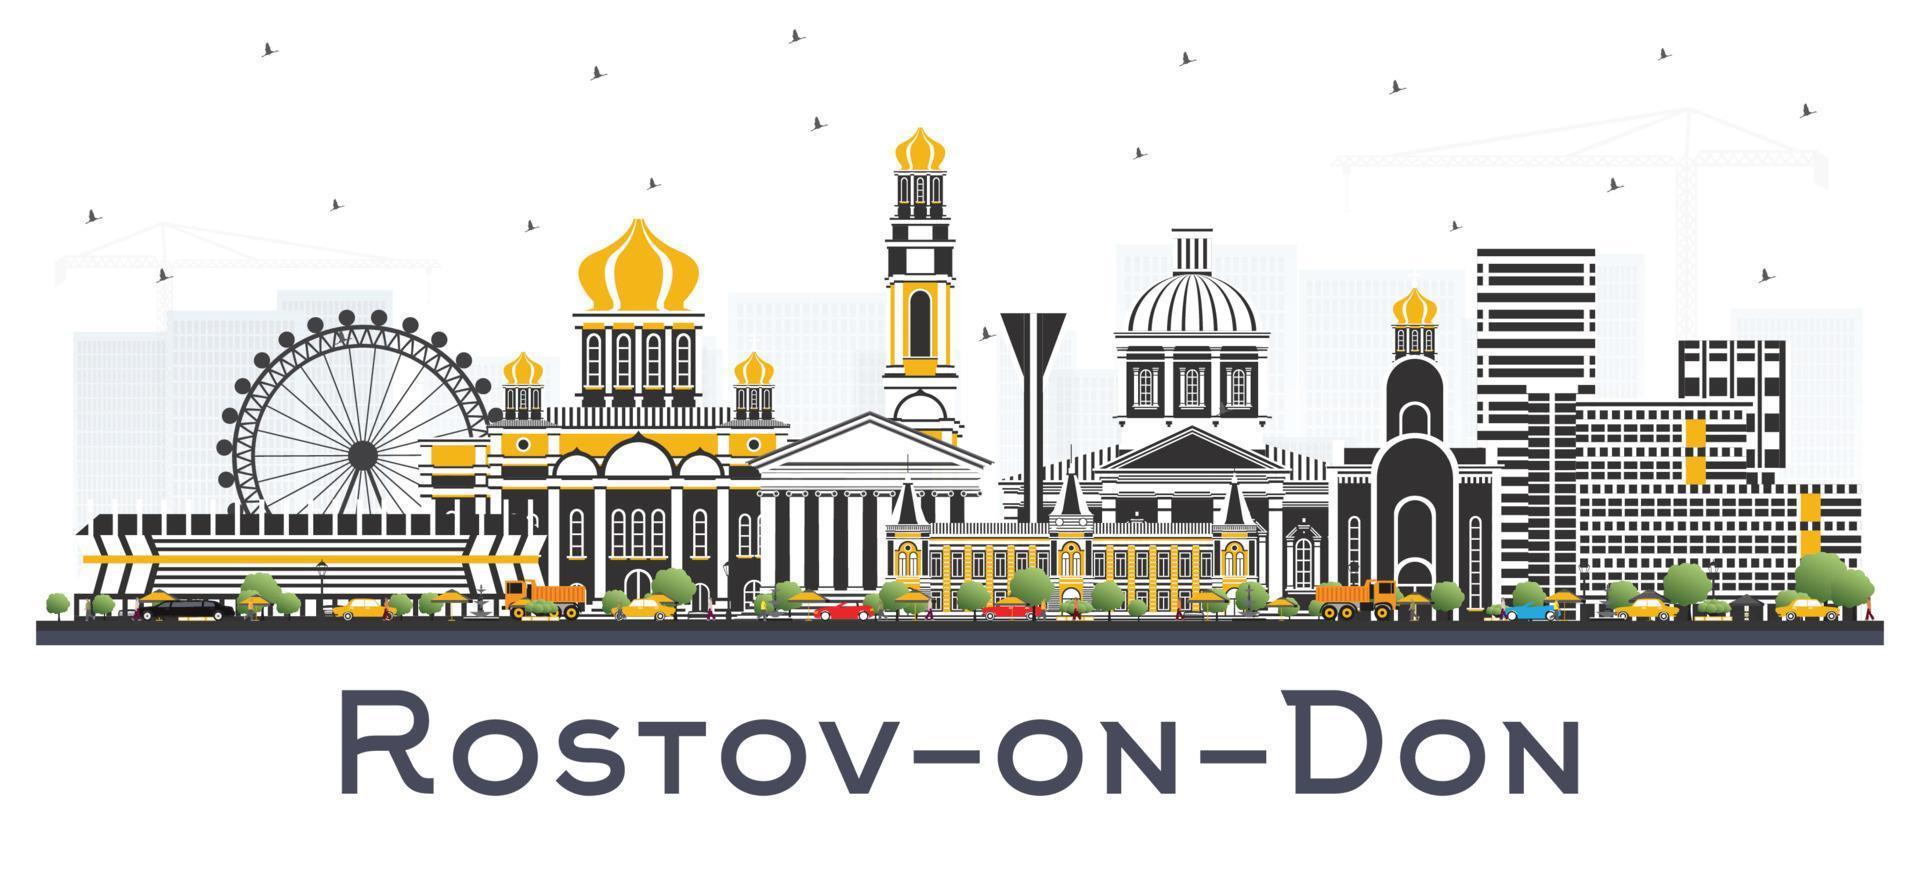 horizonte da cidade de rostov-on-don na rússia com edifícios coloridos isolados em branco. vetor